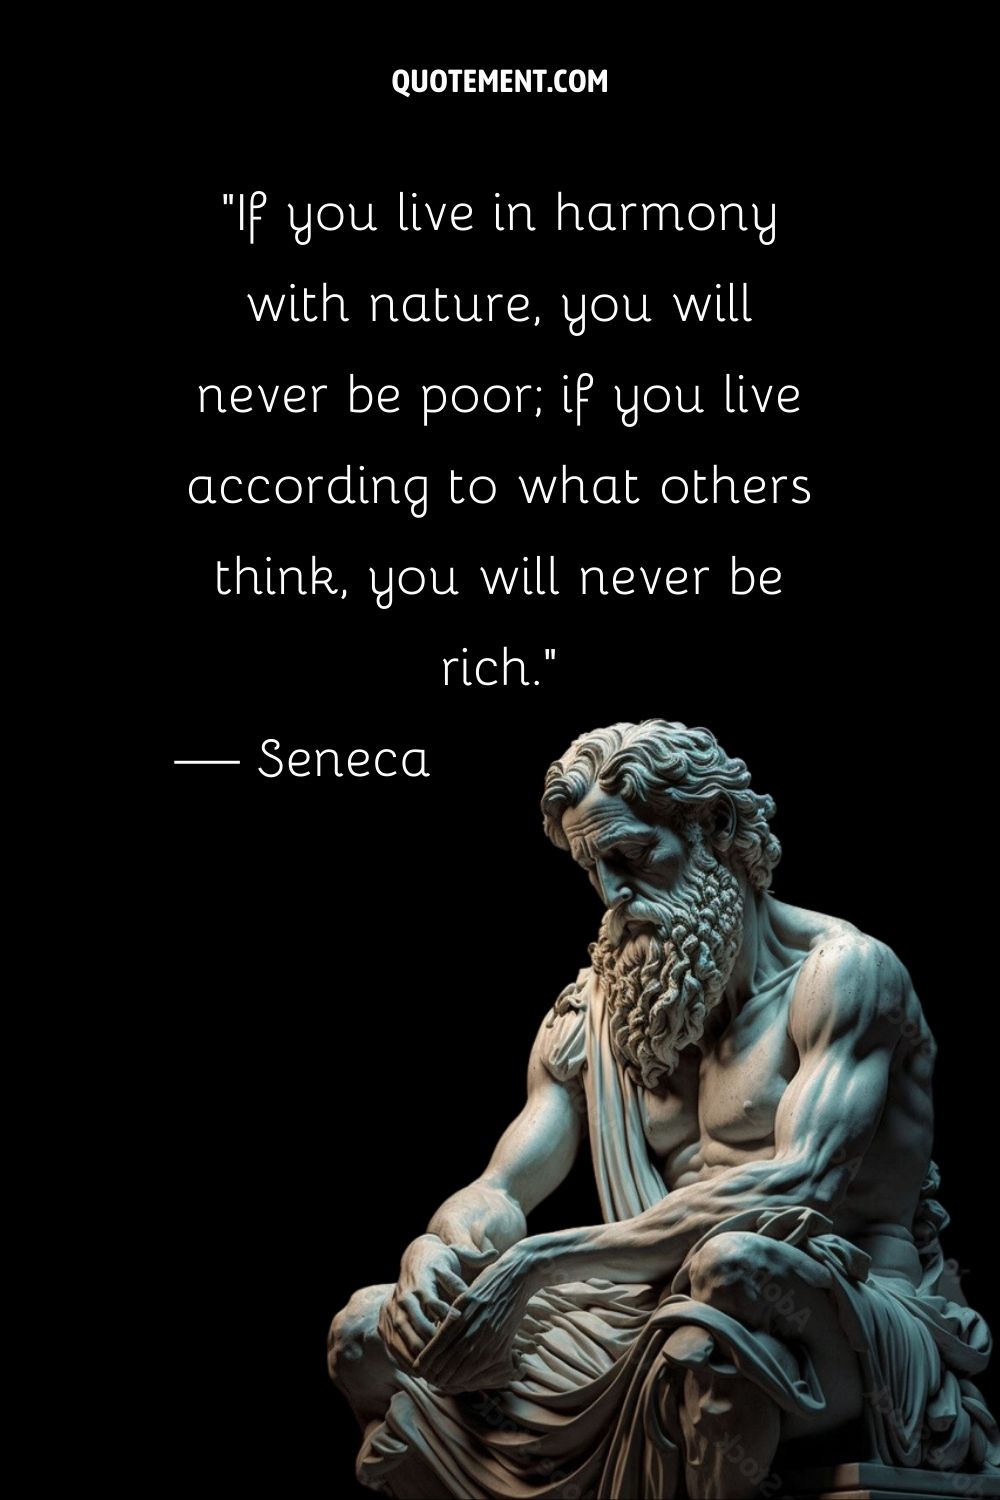 Silent philosopher Seneca's strength frozen in stone.